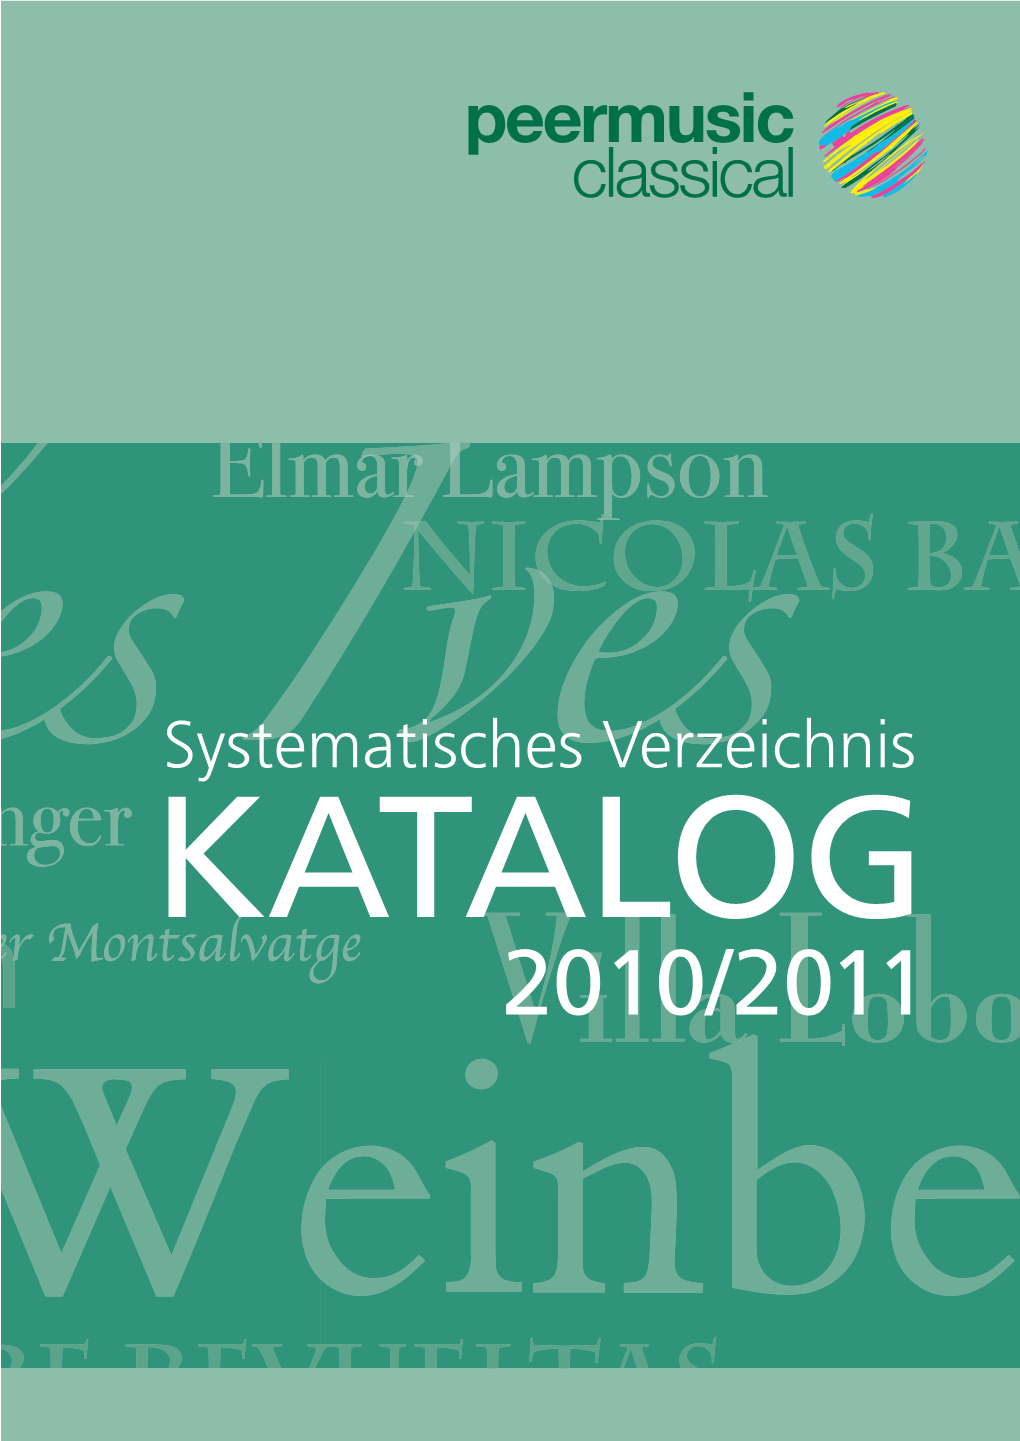 Peermusic Classical Katalog 2010